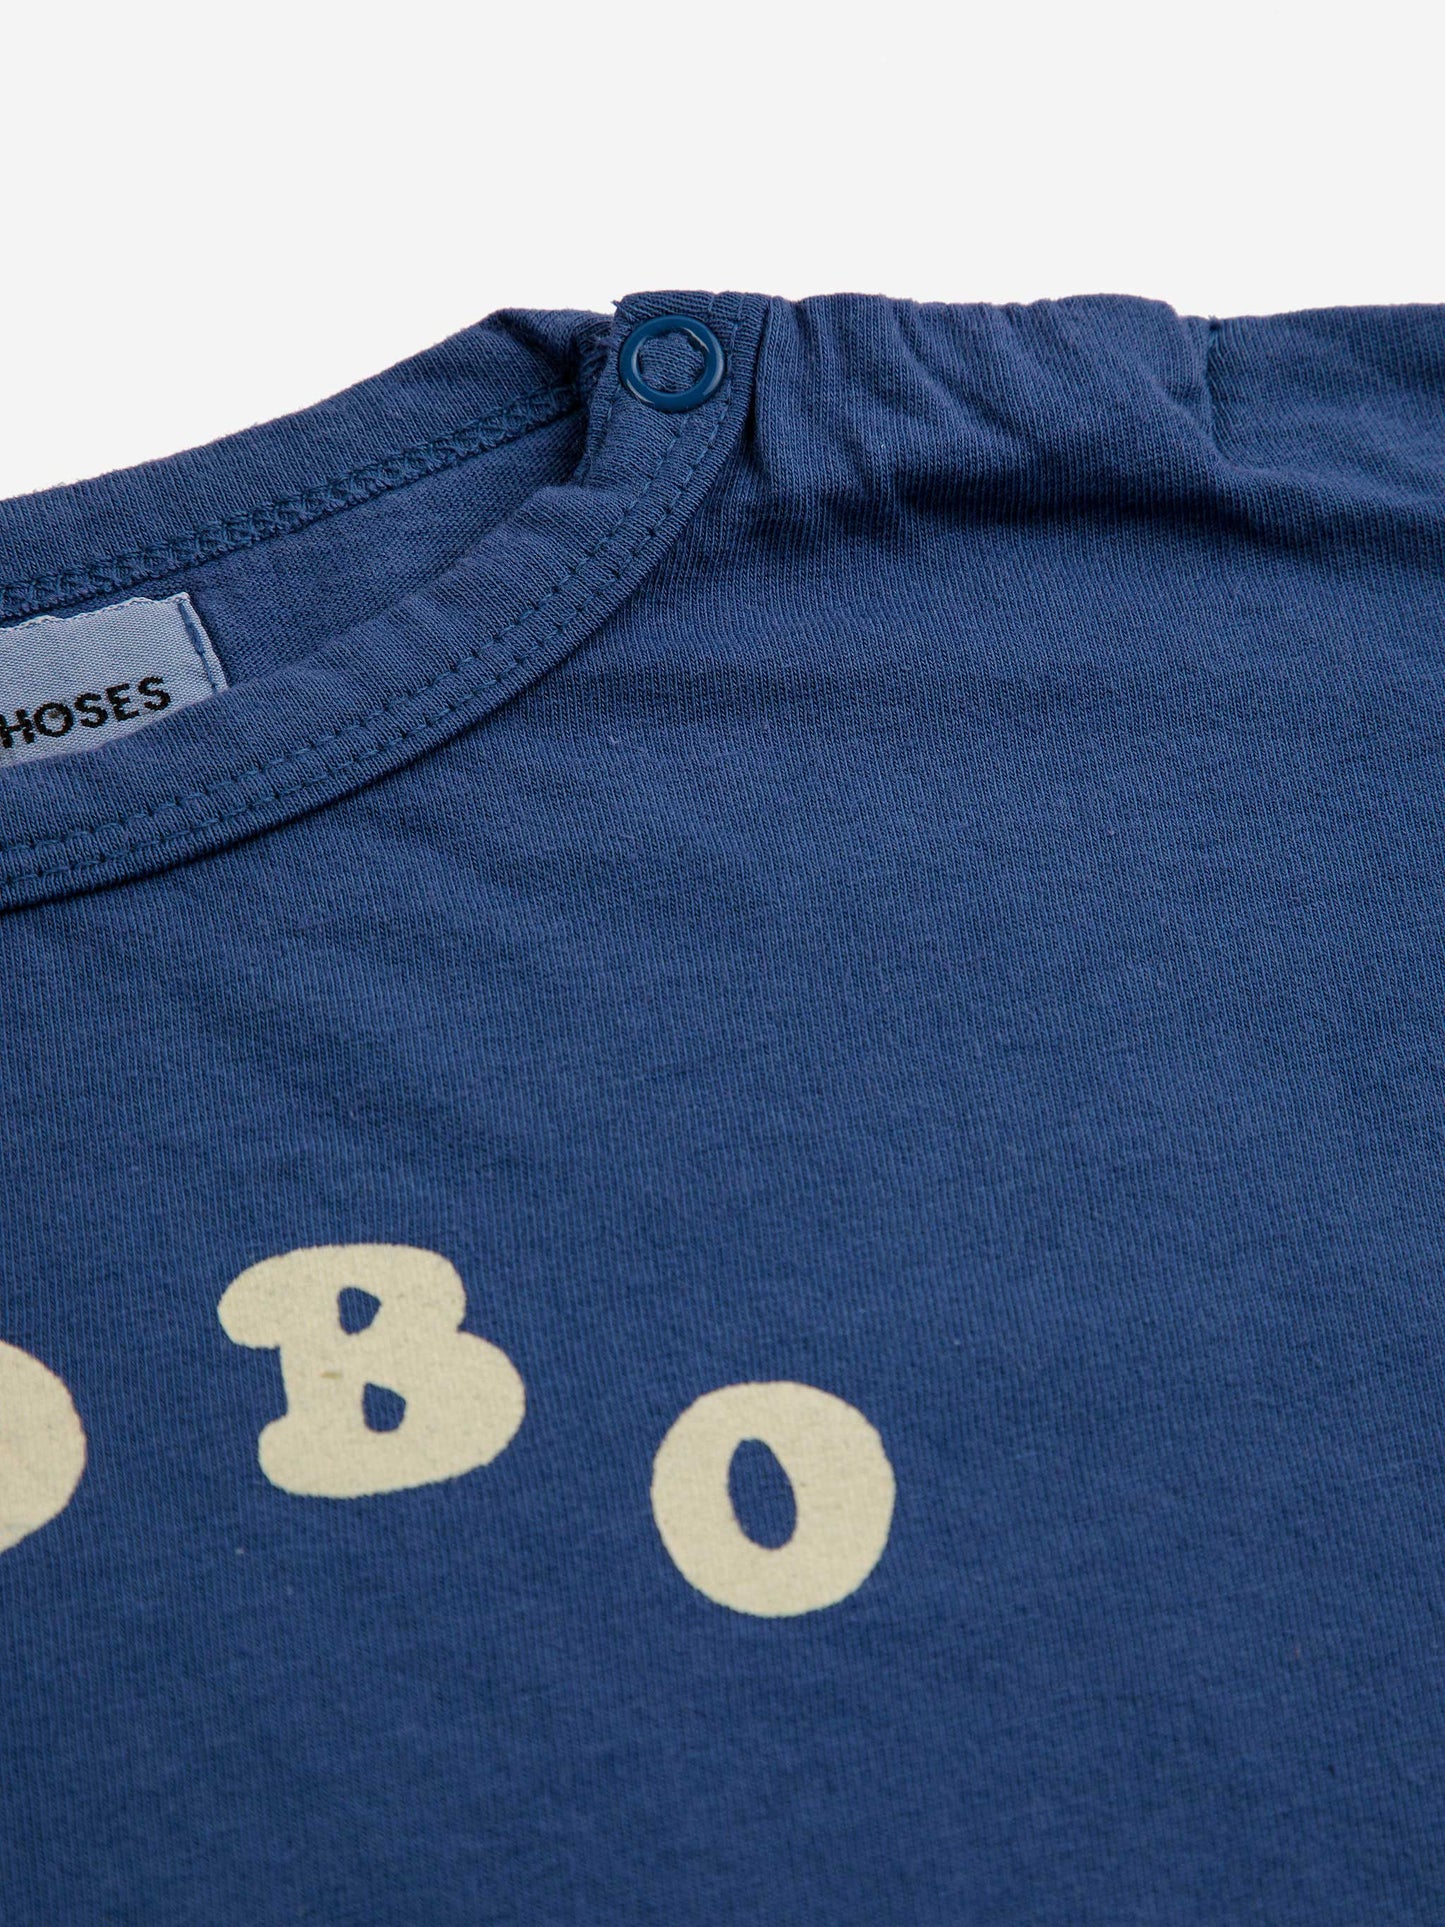 Bobo Choses Circle t-shirt